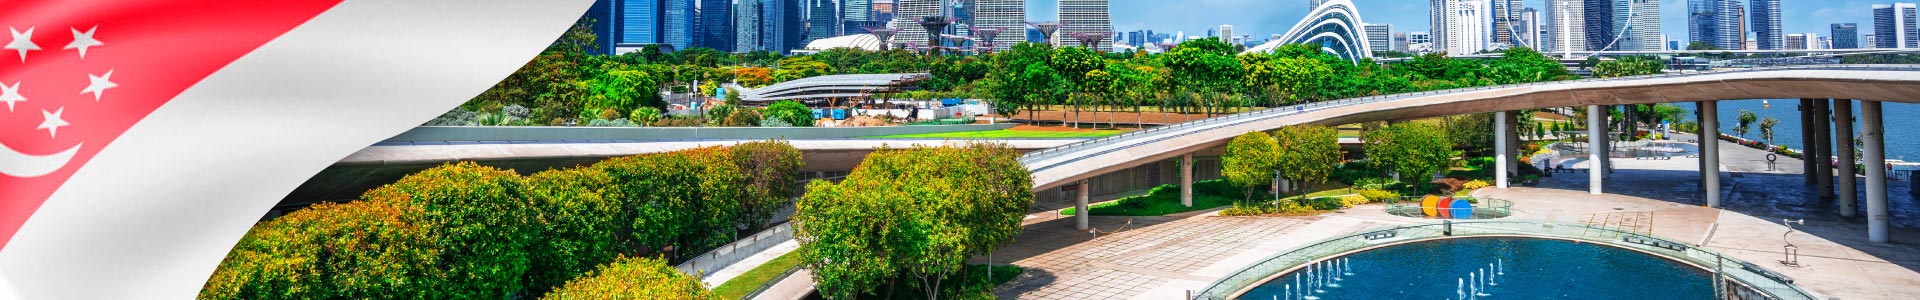 Vista del paisaje urbano de Singapur desde el parque de Marina de Singapur